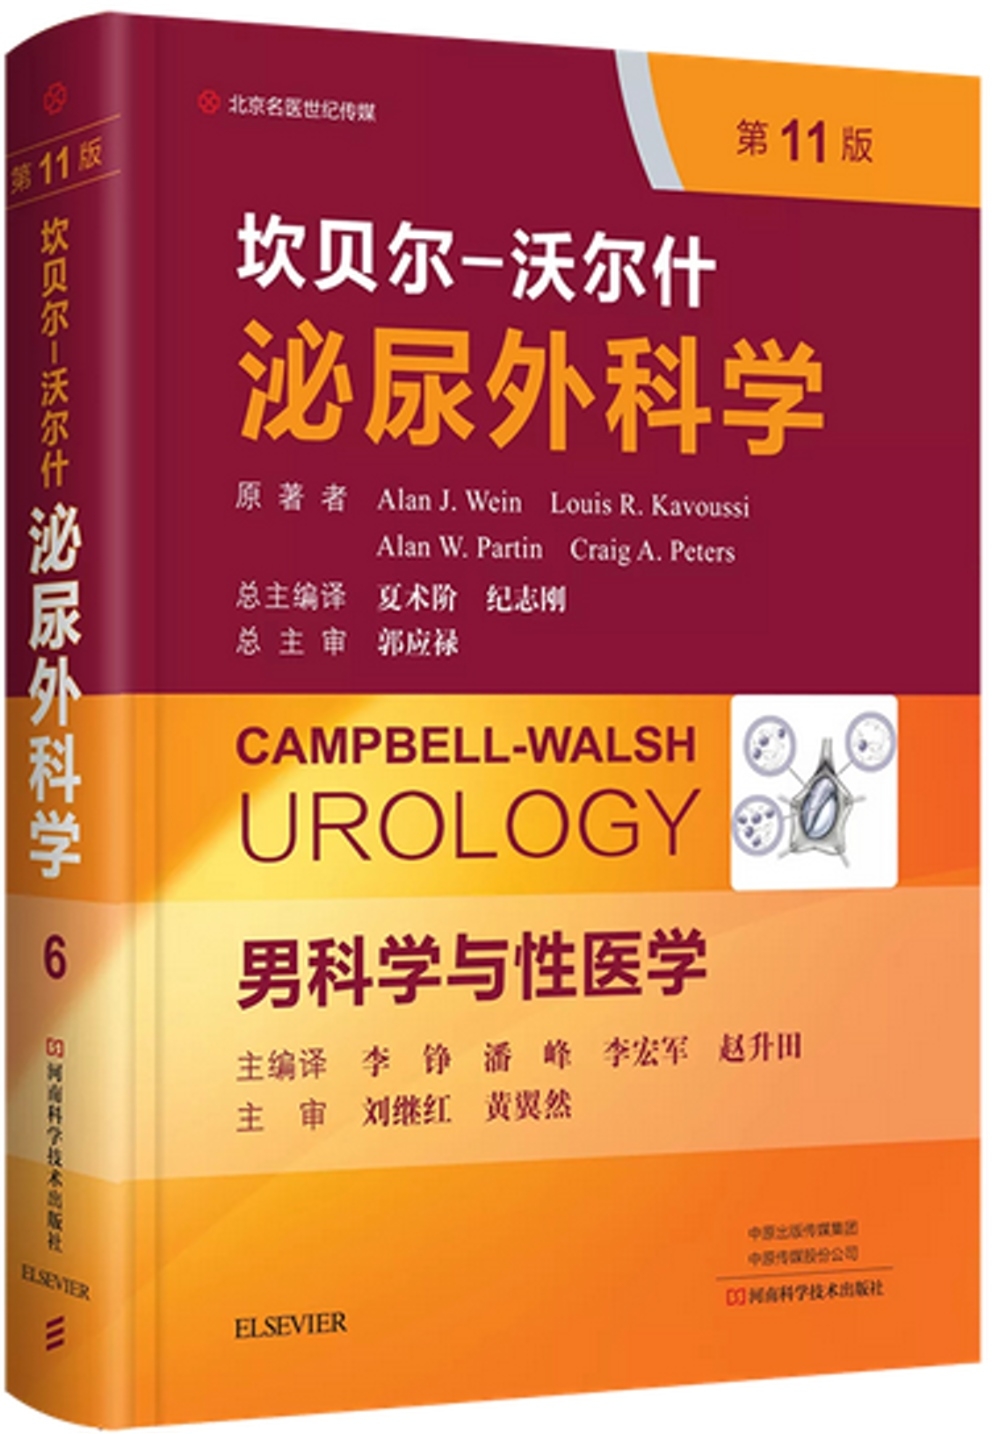 坎貝爾-沃爾什泌尿外科學第6卷 男科學與性醫學(第11版)